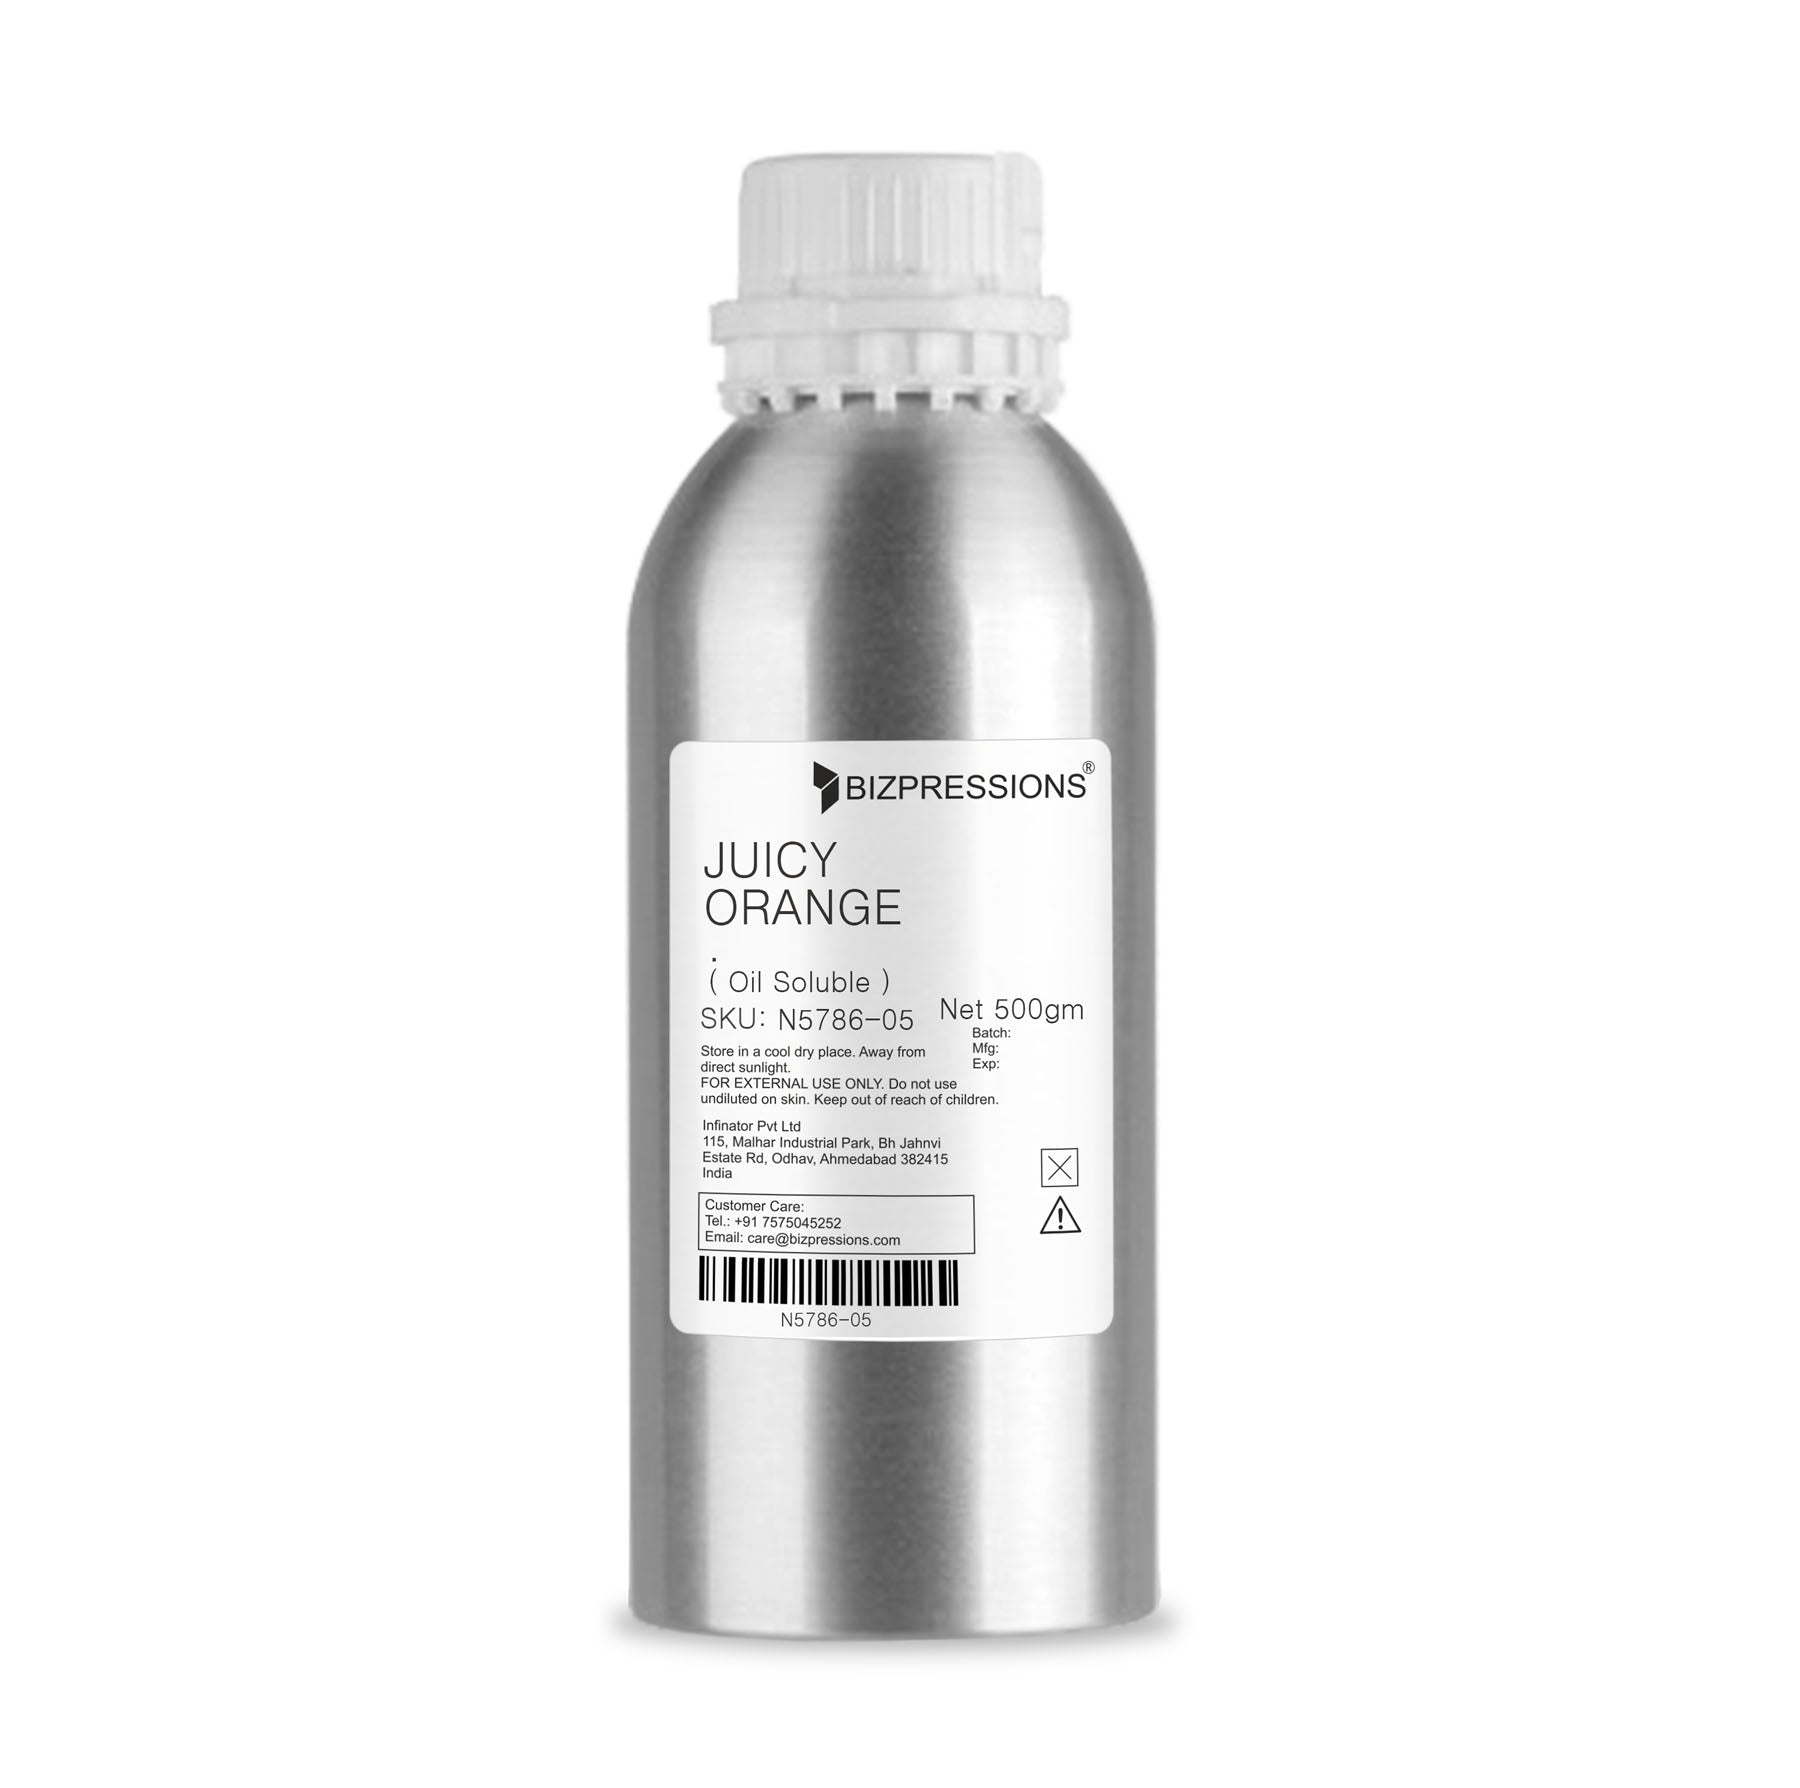 JUICY ORANGE - Fragrance ( Oil Soluble ) - 500 gm